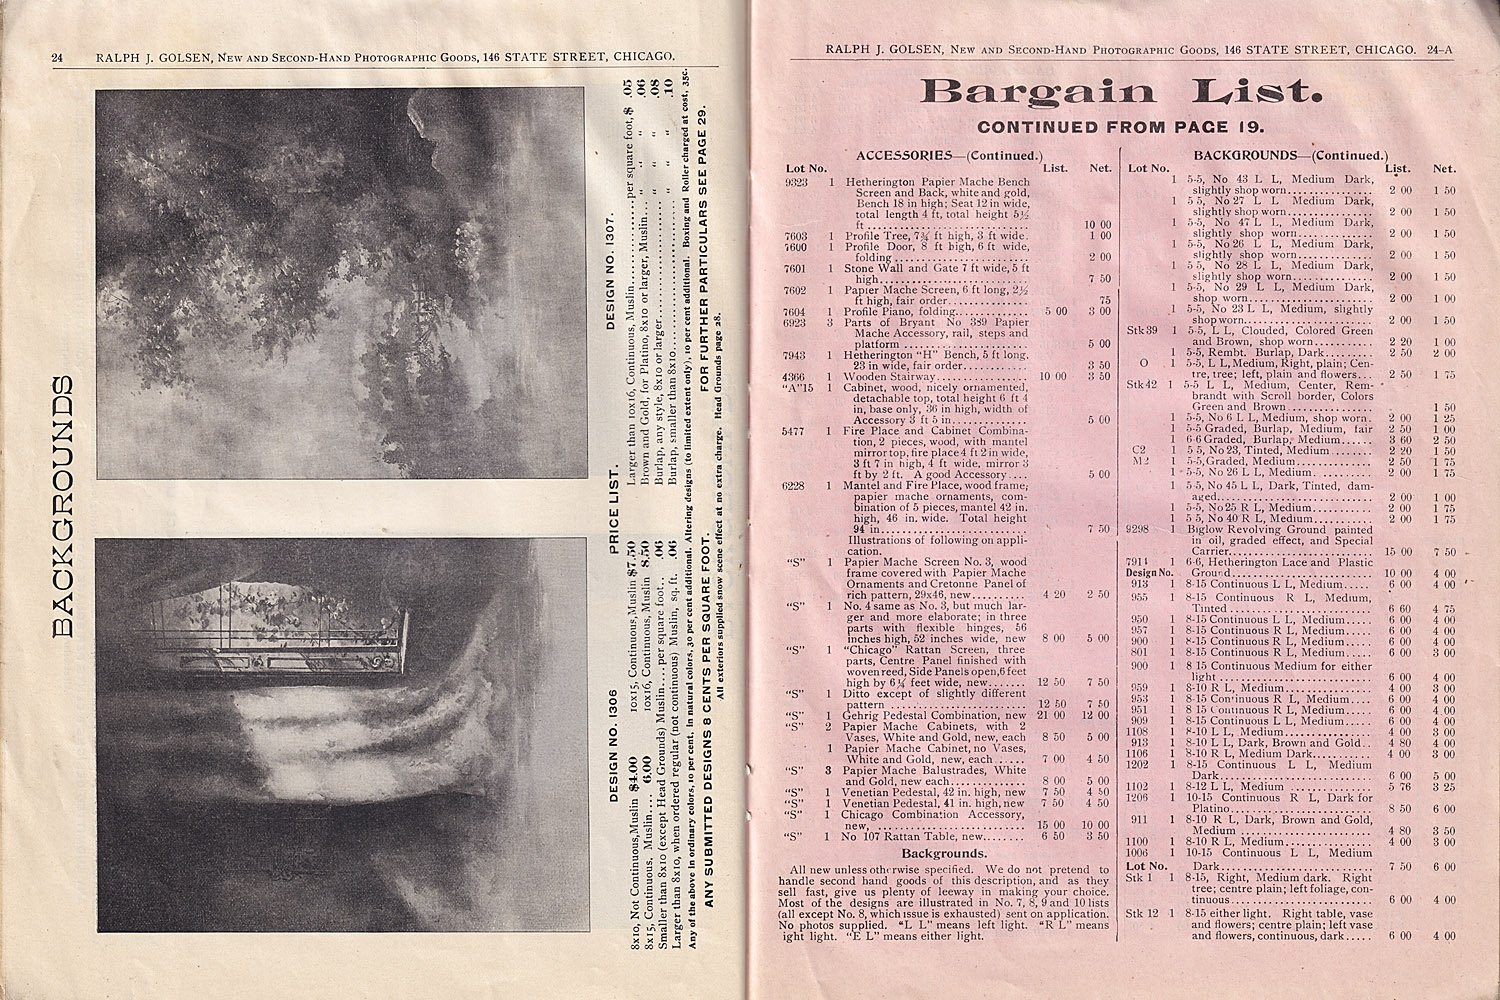 1118.golson.cat.&.bargain.list.no11.1898-24-24A-1500.jpg